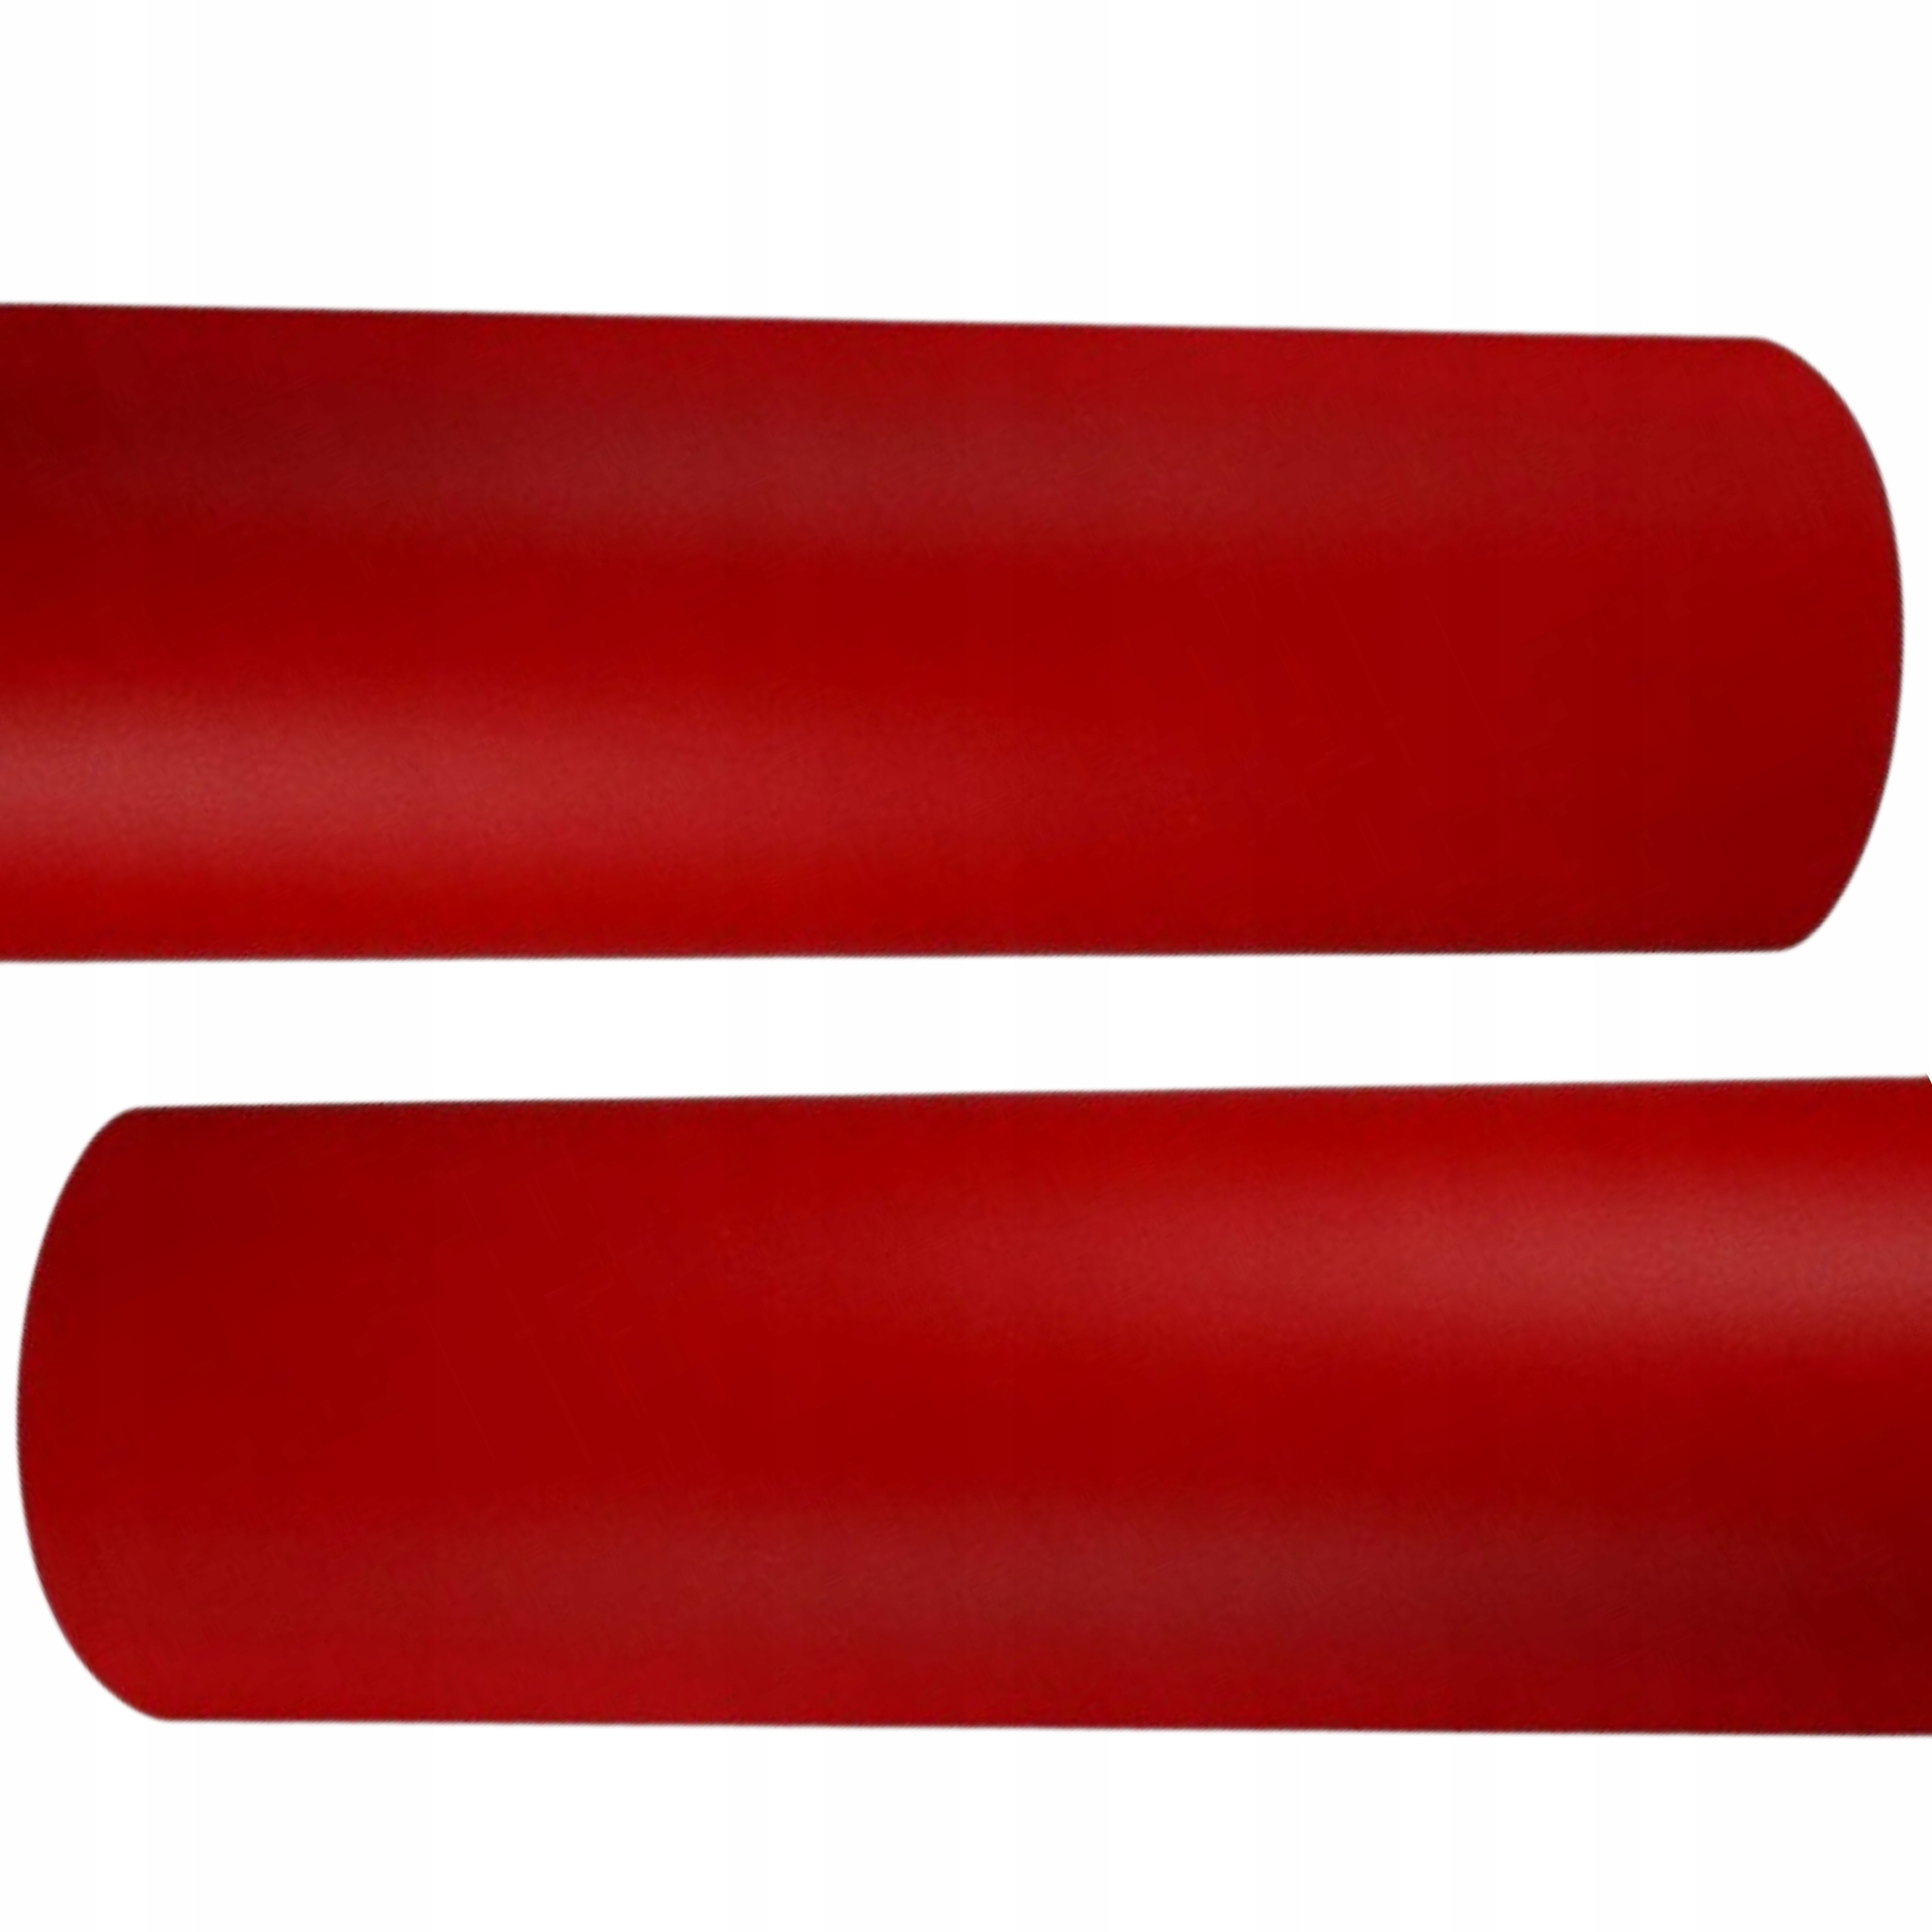 Автомобильная пленка шпон красный коврик 1. 23x3m ширина продукта 123 см